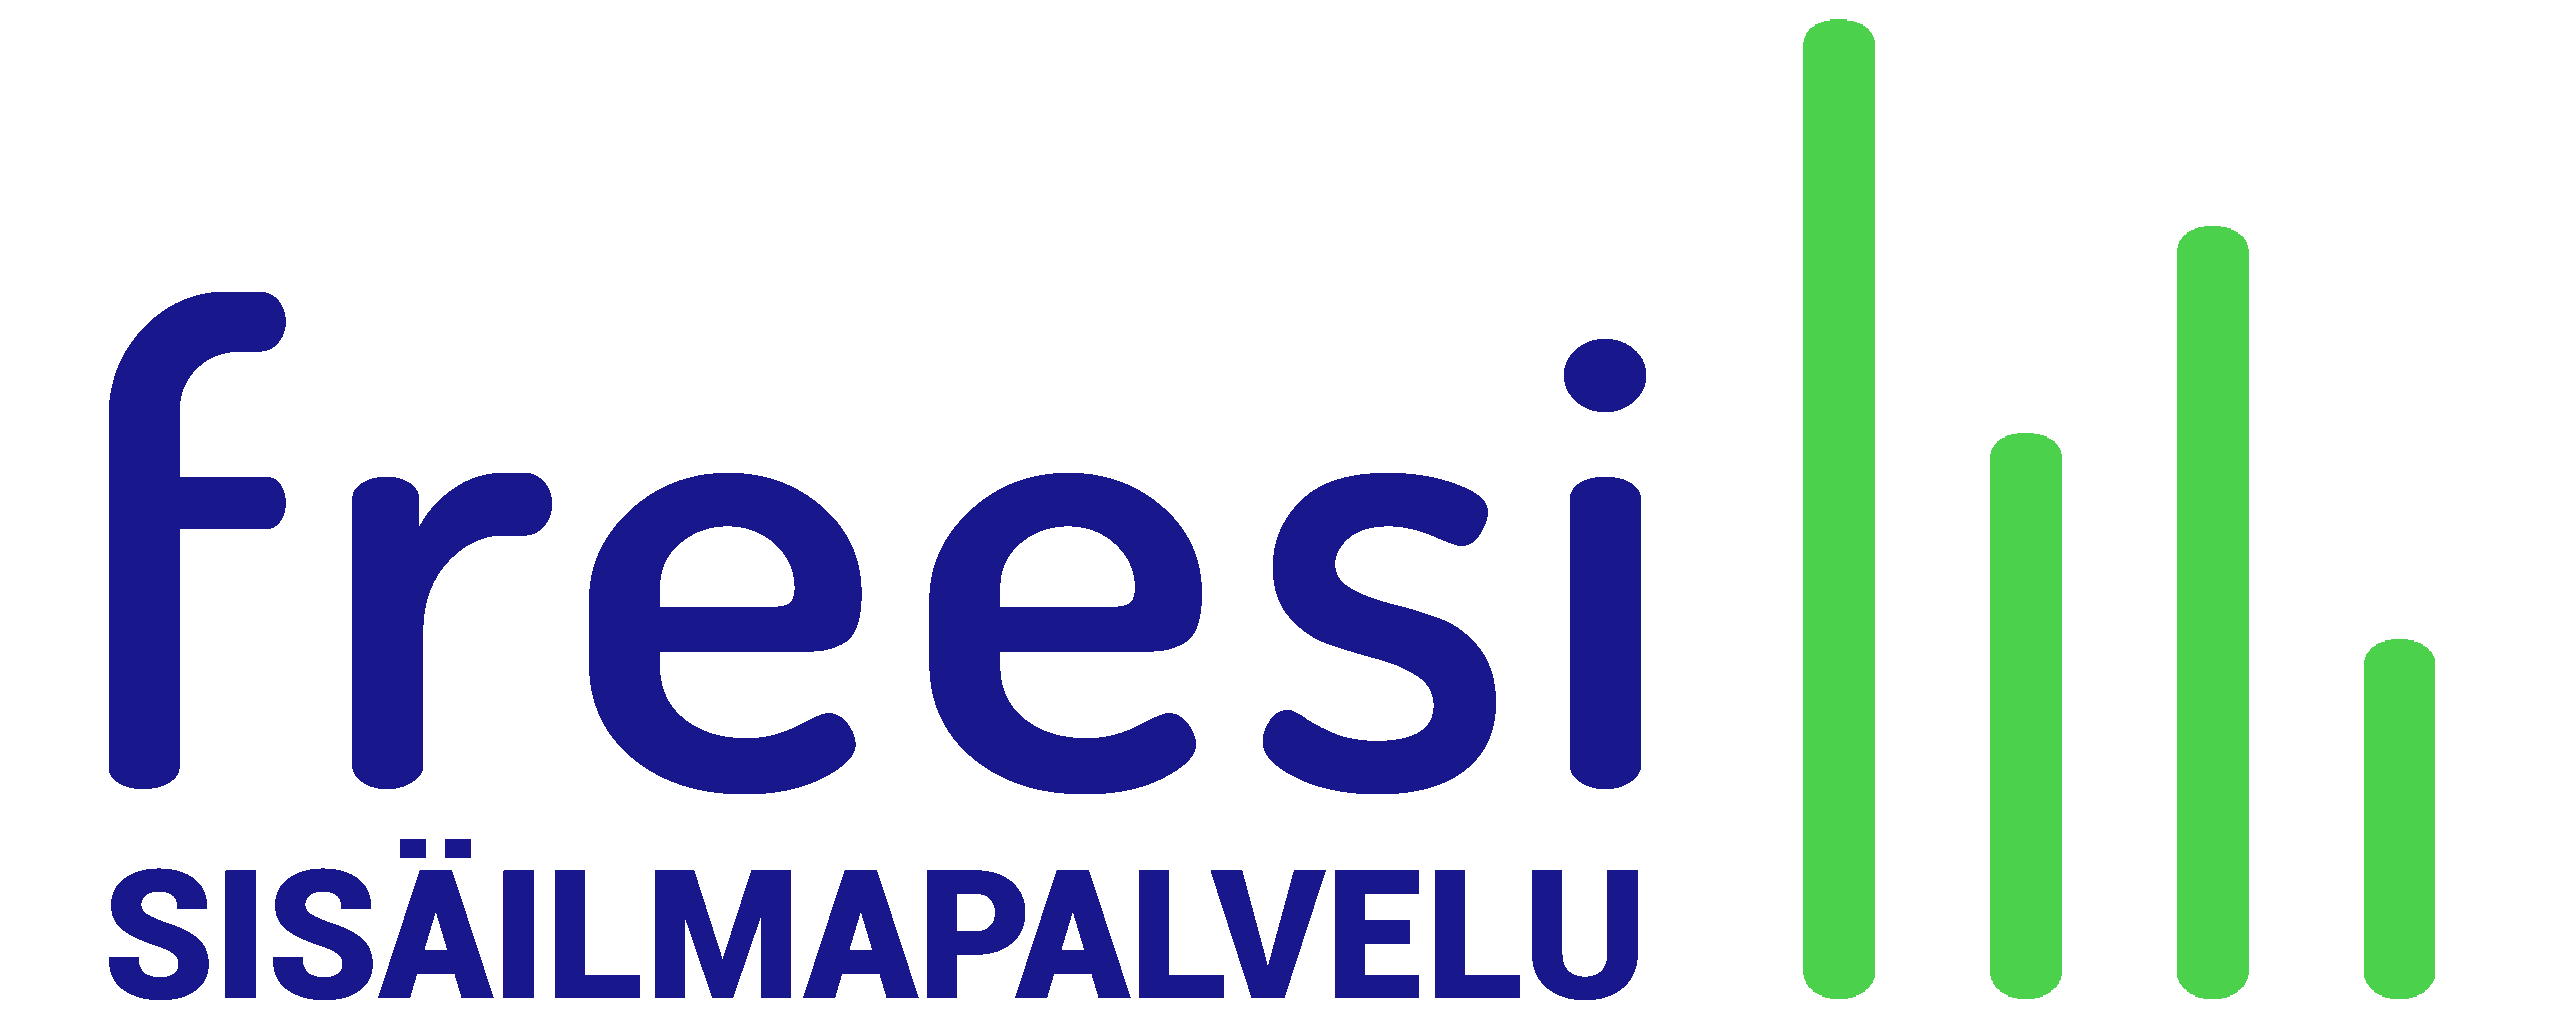 Freesi-sisäilmapalvelun logo